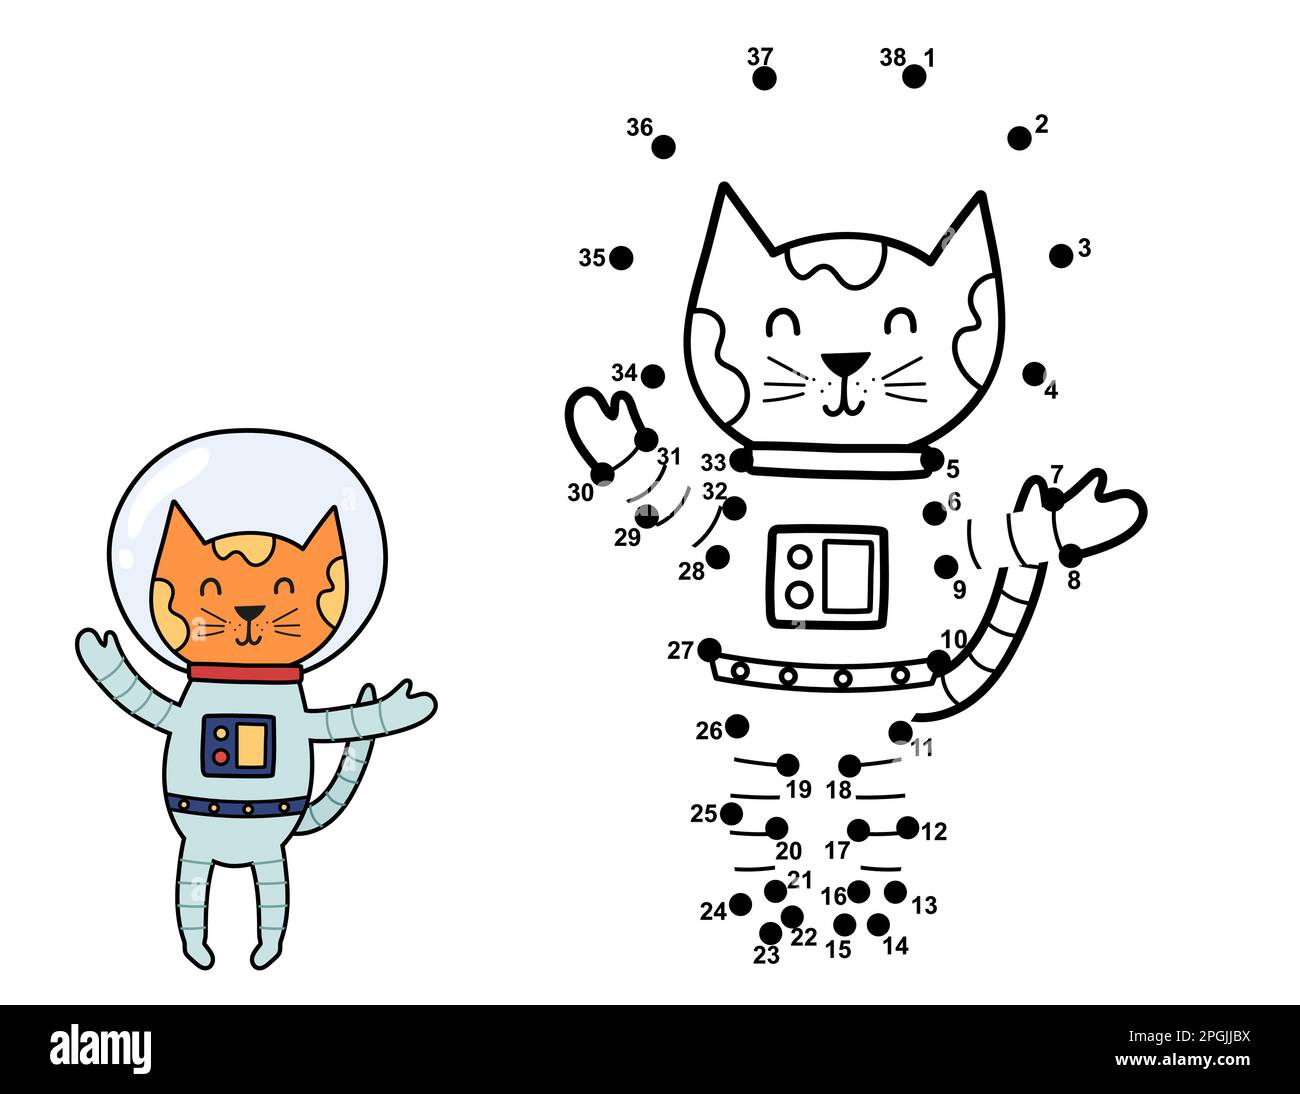 Attachez les points et dessinez un joli chat astronaute. Jeu de chiffres point à point Illustration de Vecteur